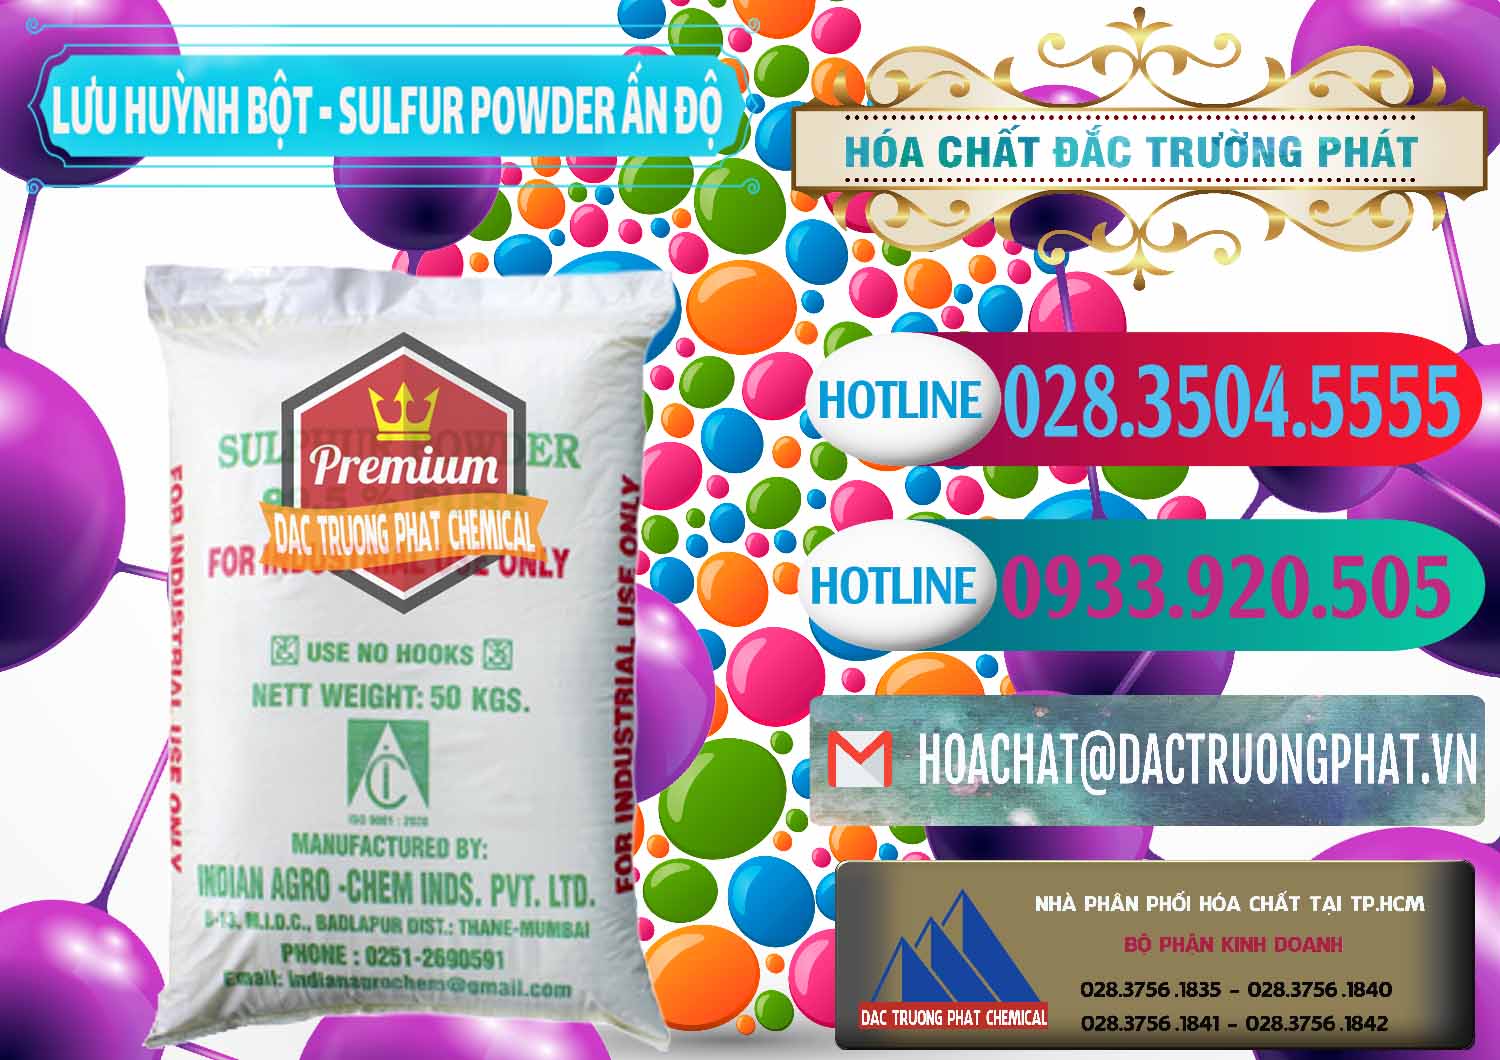 Cty bán & cung cấp Lưu huỳnh Bột - Sulfur Powder Ấn Độ India - 0347 - Chuyên phân phối _ kinh doanh hóa chất tại TP.HCM - truongphat.vn